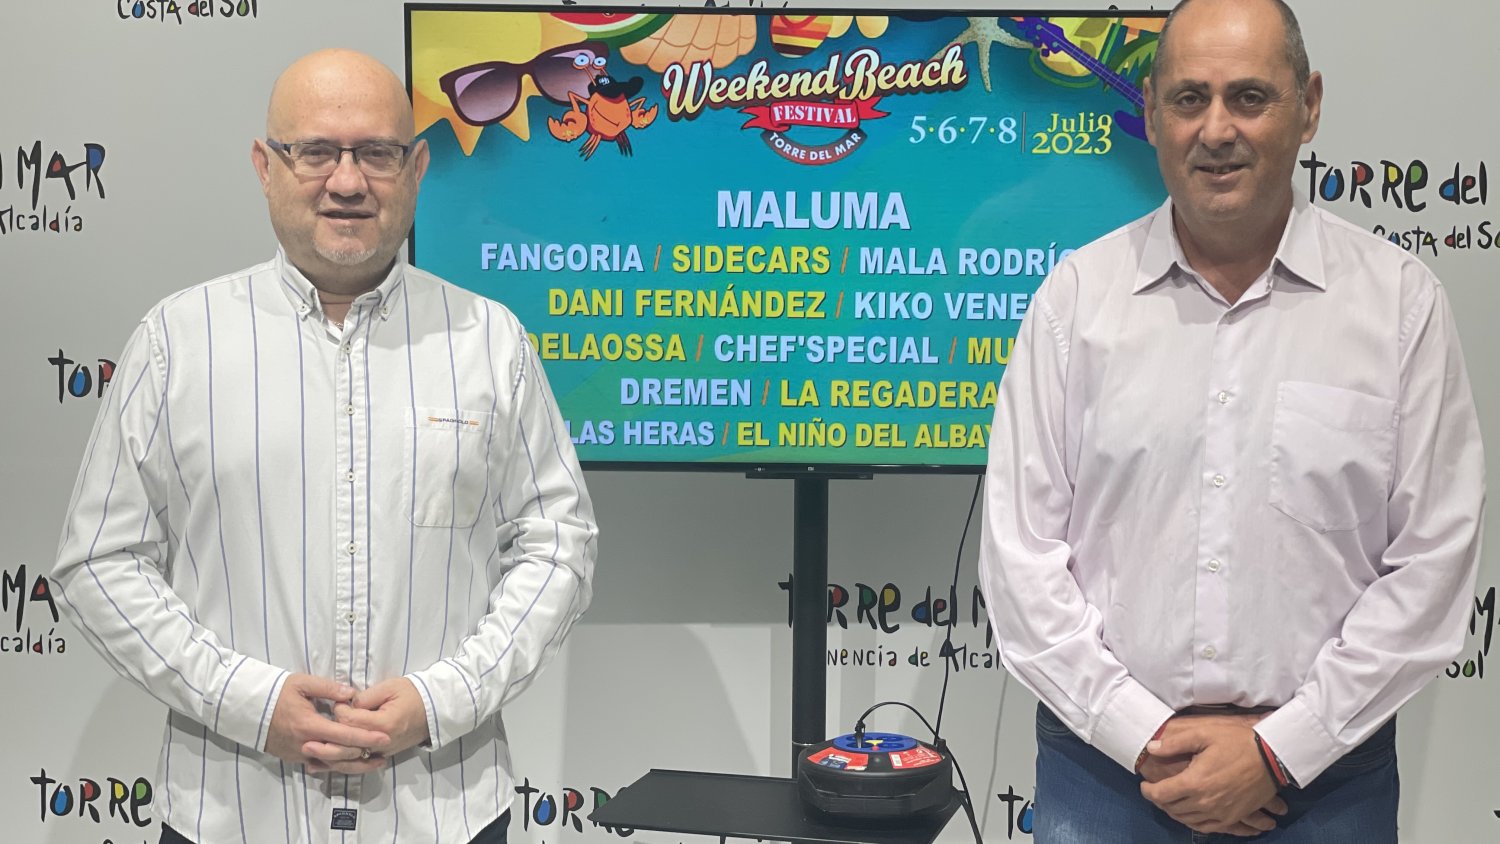 Maluma, Fangoria y Kiko Veneno, primeras confirmaciones del Weekend Beach Festival